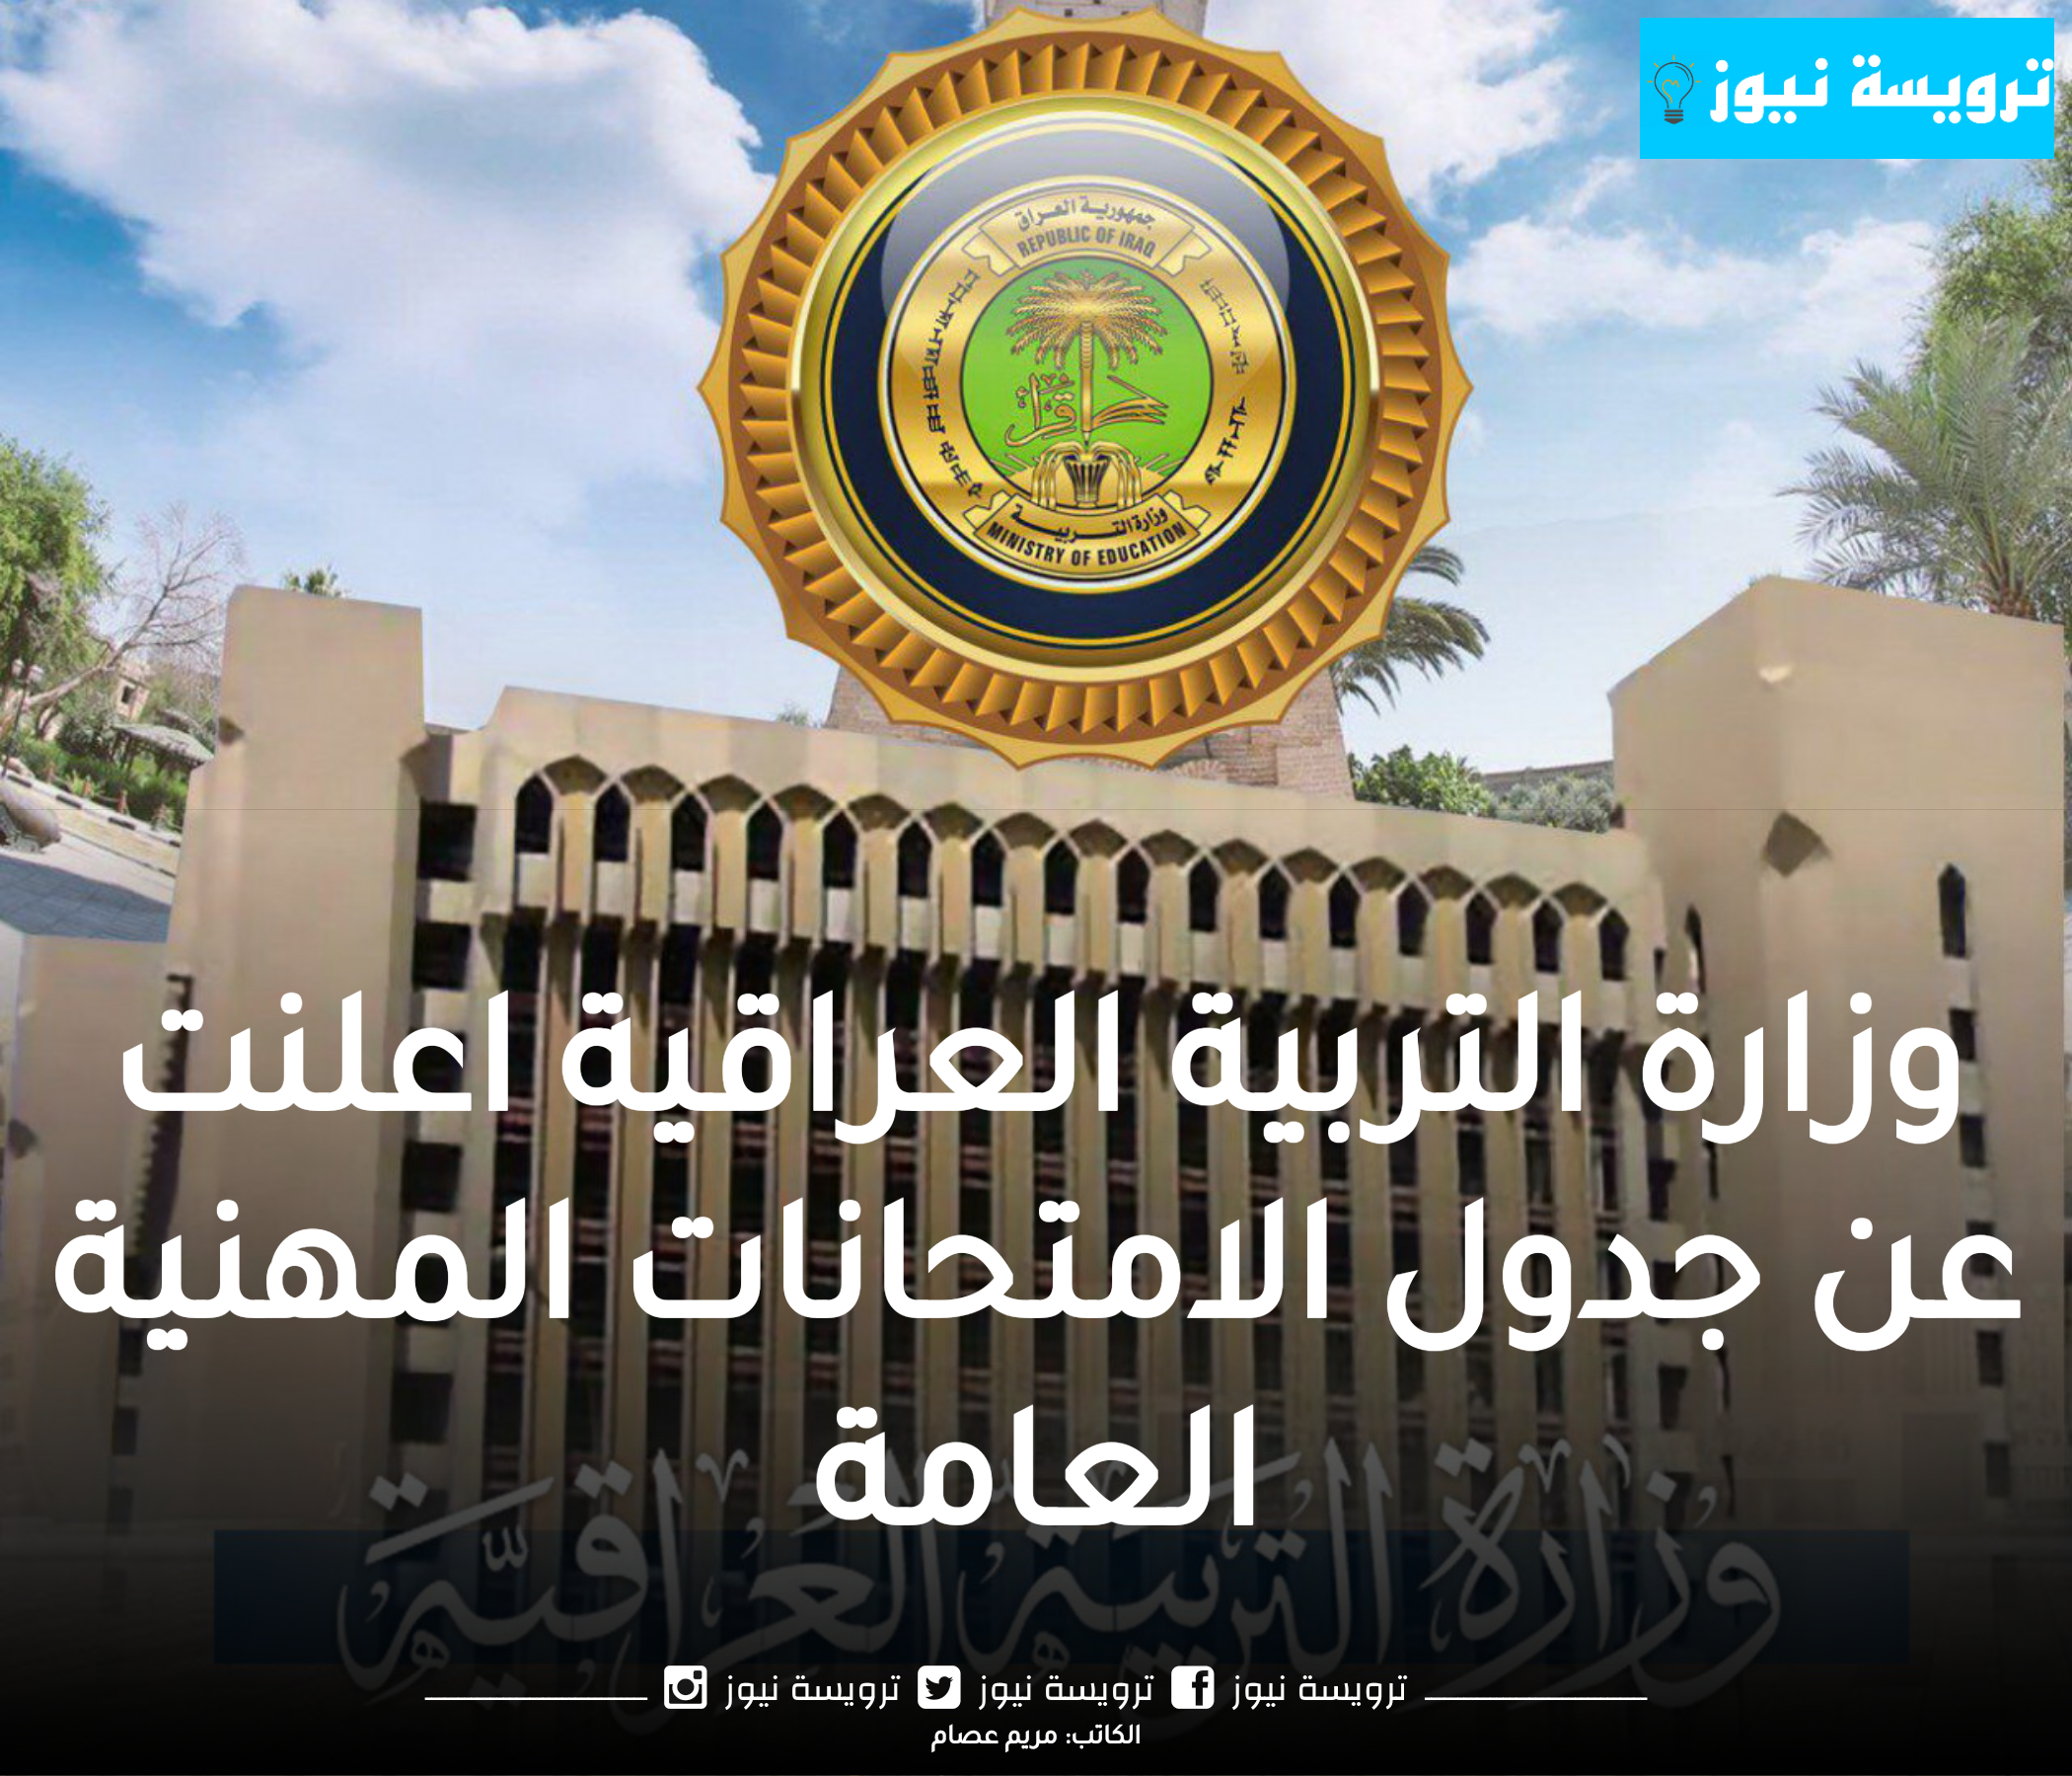 وزارة التربية العراقية اعلنت عن جدول الامتحانات المهنية العامة